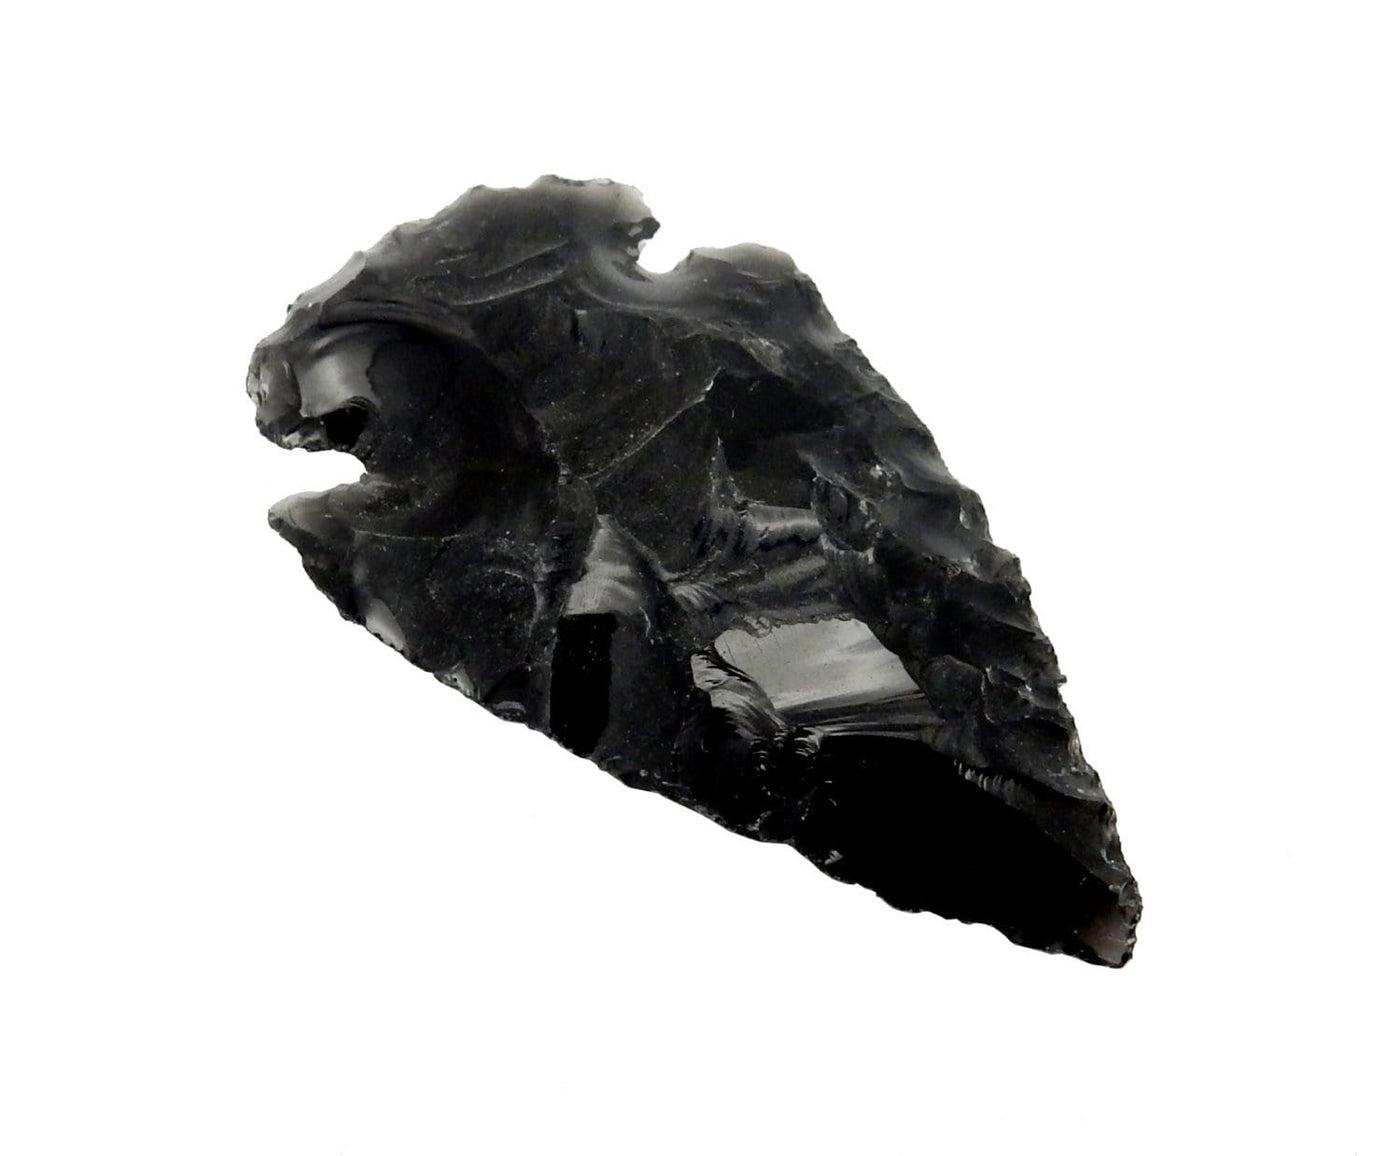 black obsidian arrowhead on a white arrowhead.